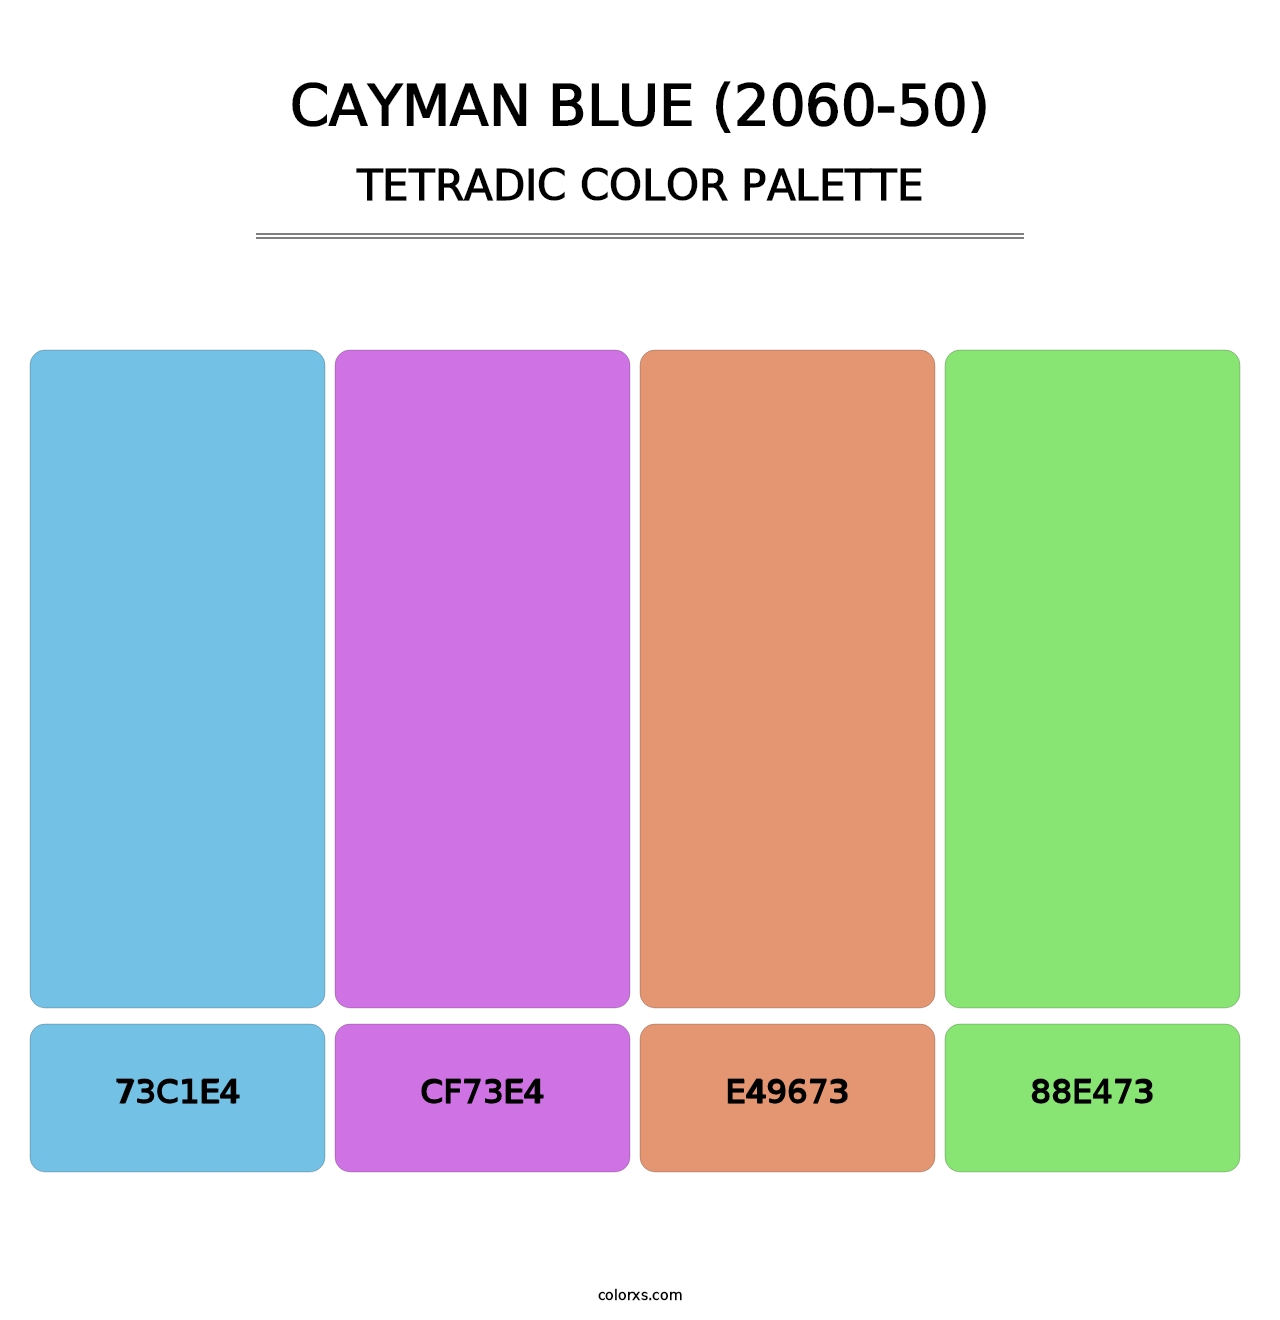 Cayman Blue (2060-50) - Tetradic Color Palette